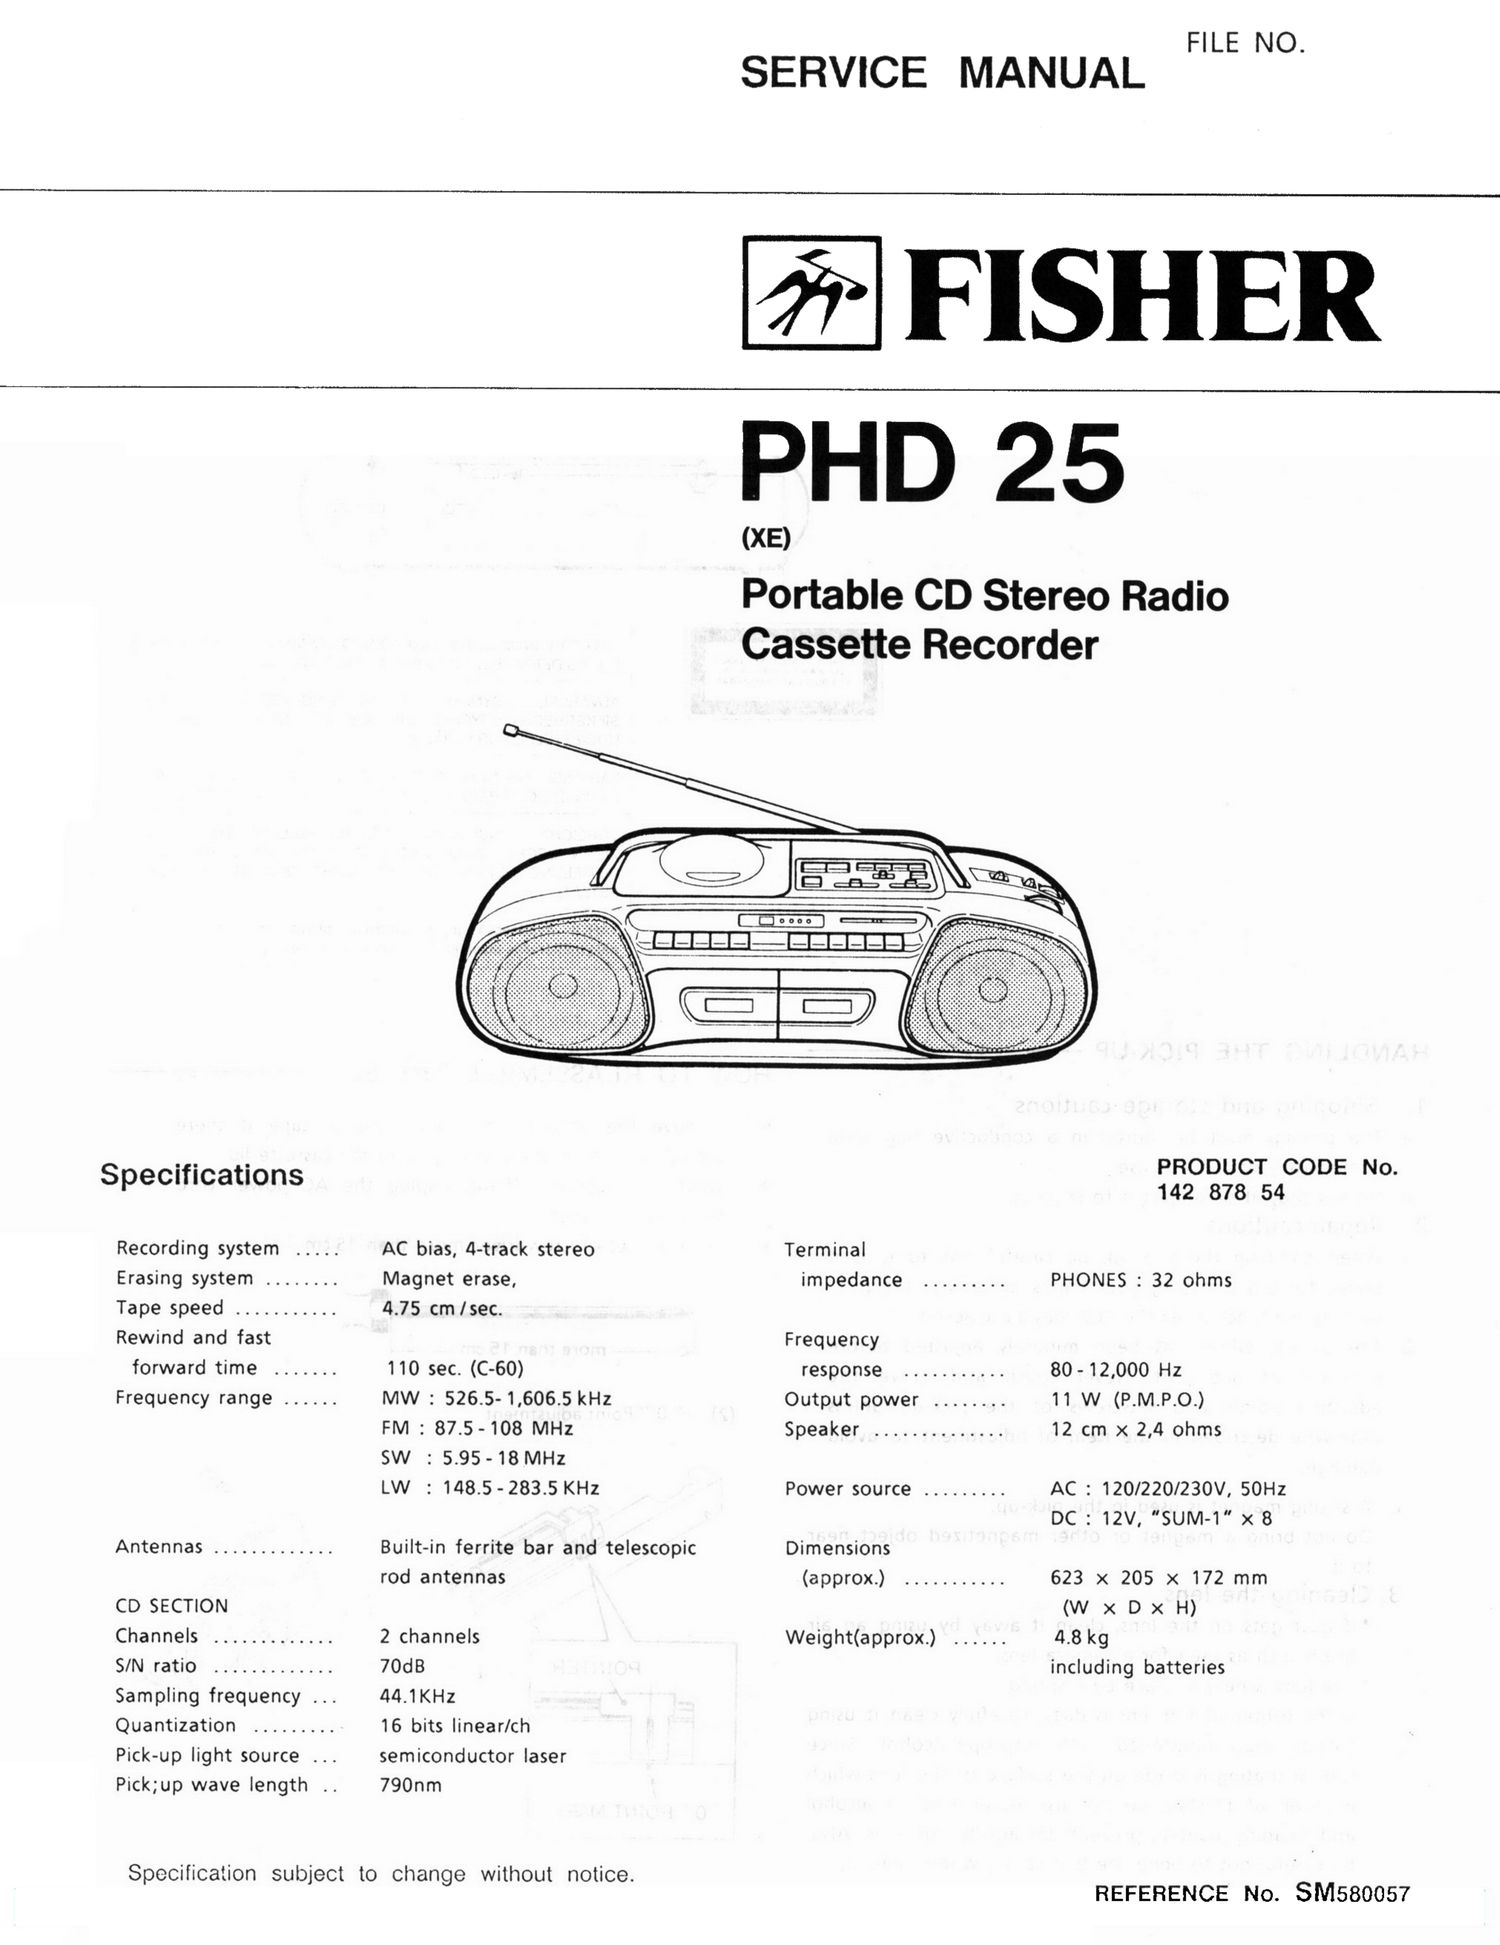 Fisher PHD 25 Schematic